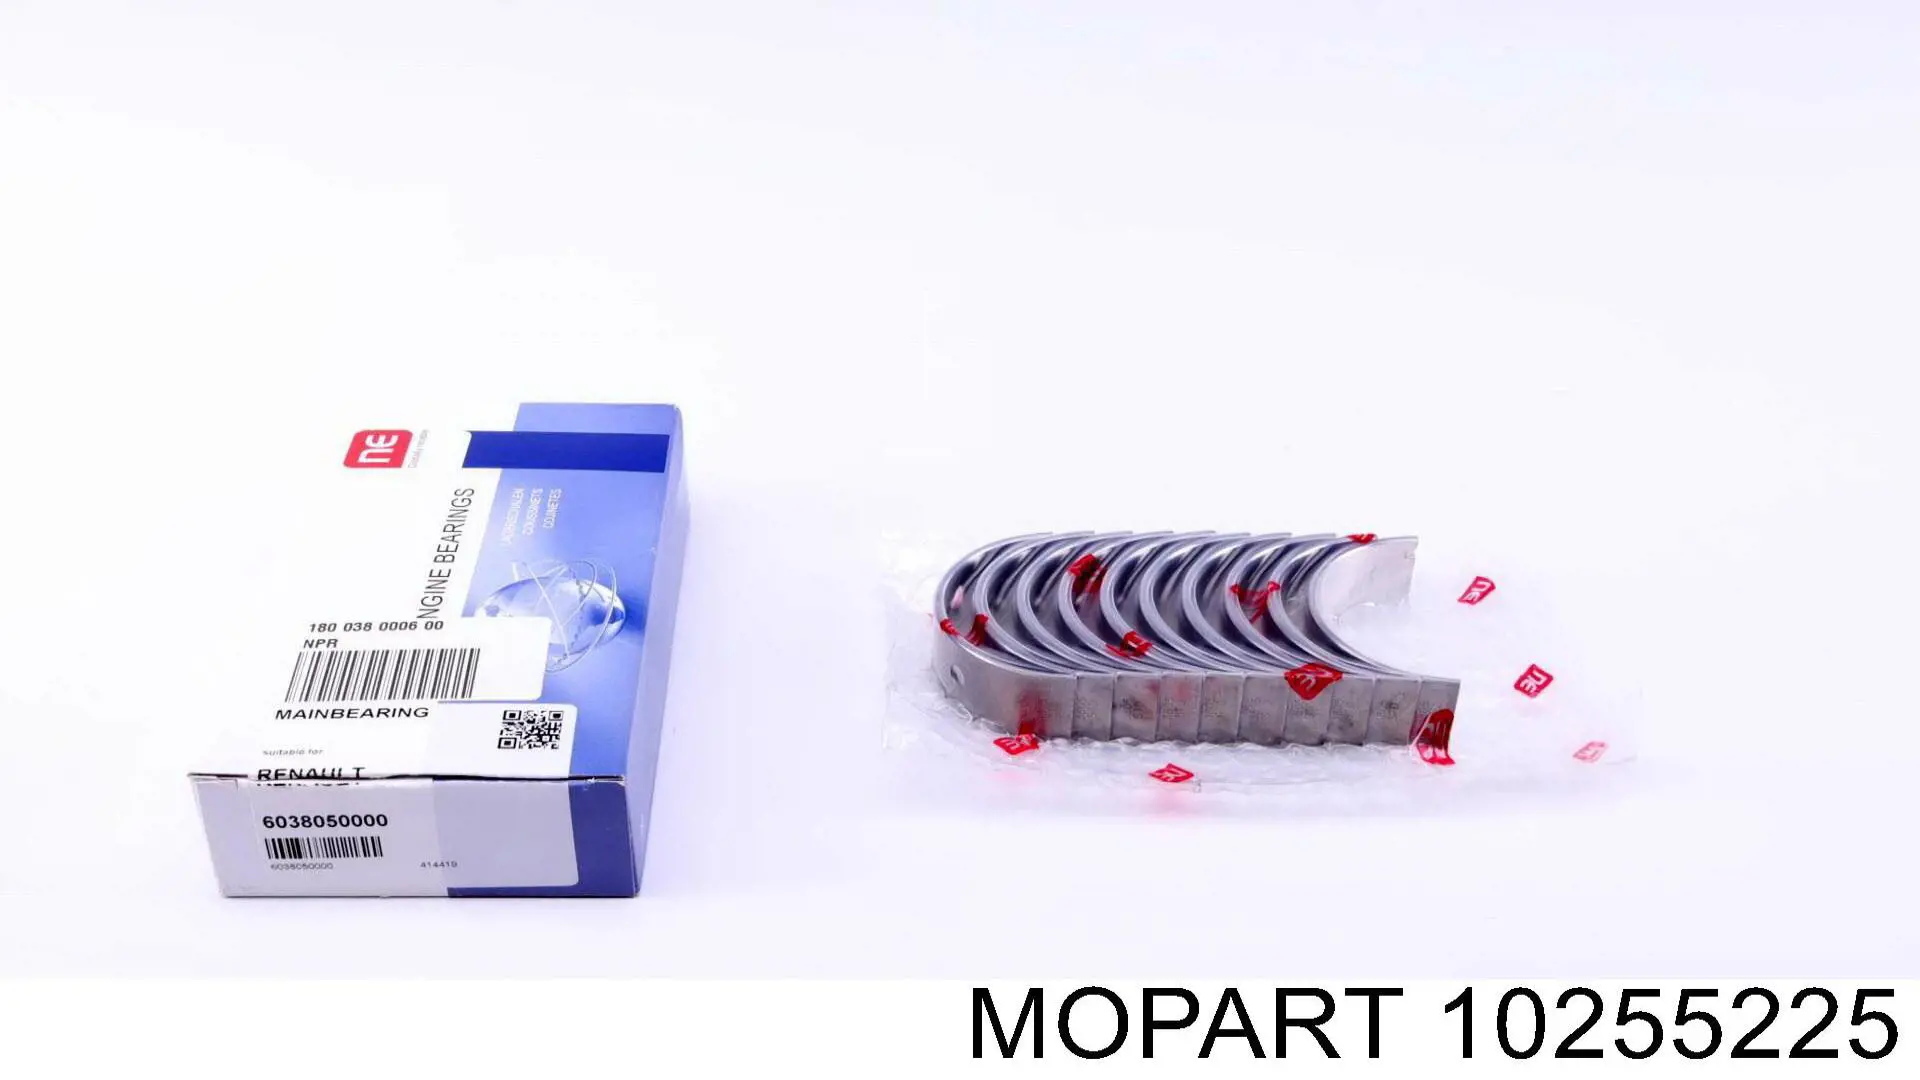 10255225 Mopart вкладыши коленвала коренные, комплект, 1-й ремонт (+0,25)